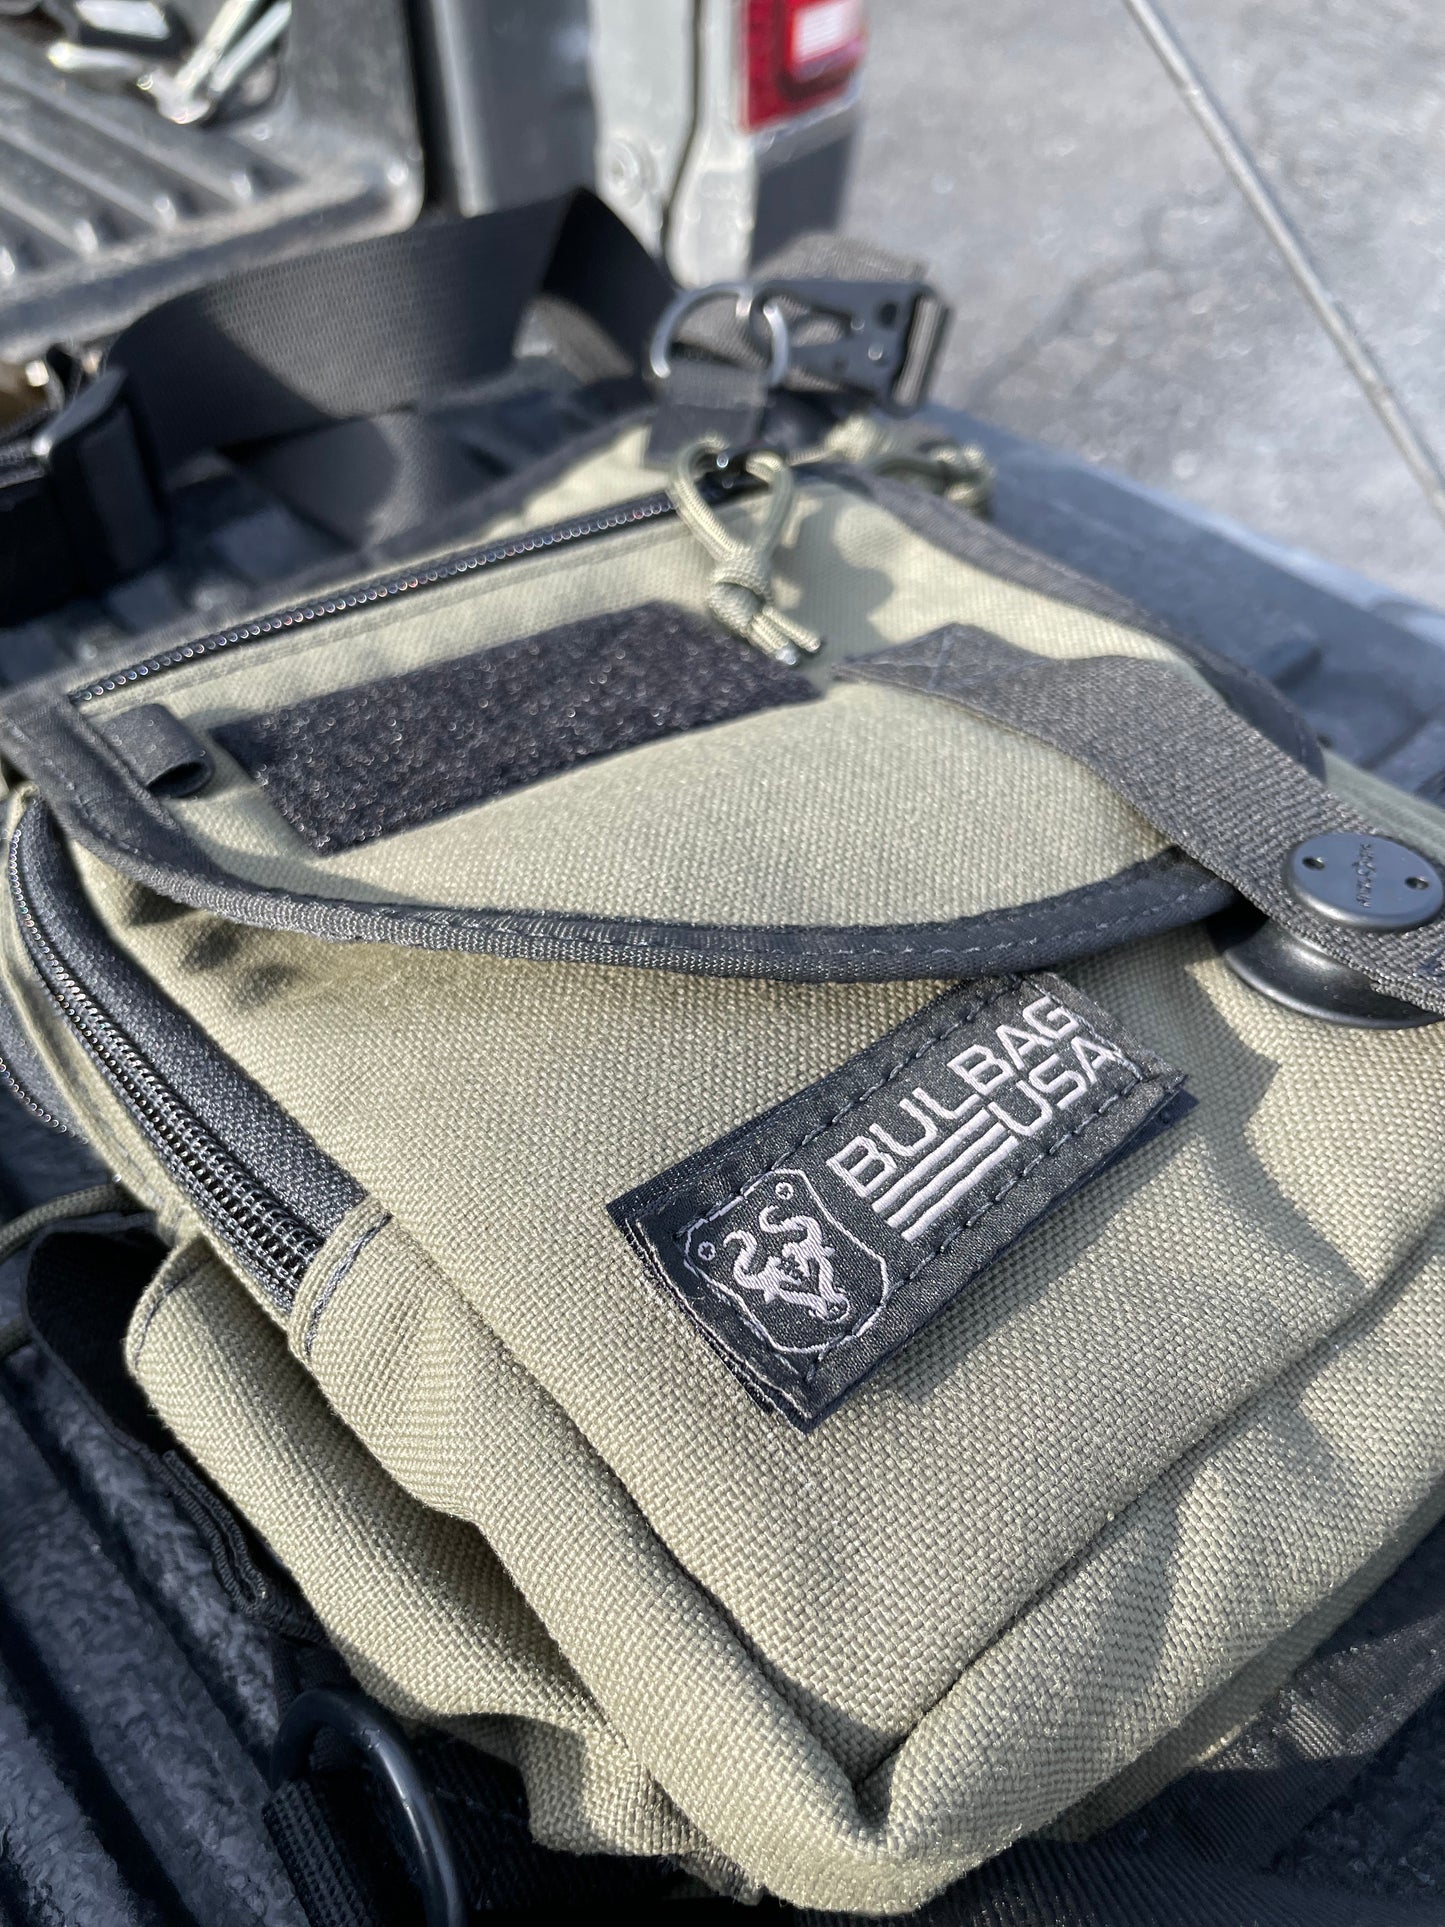 BULBAG | Ballistic Utility Lightweight Bag